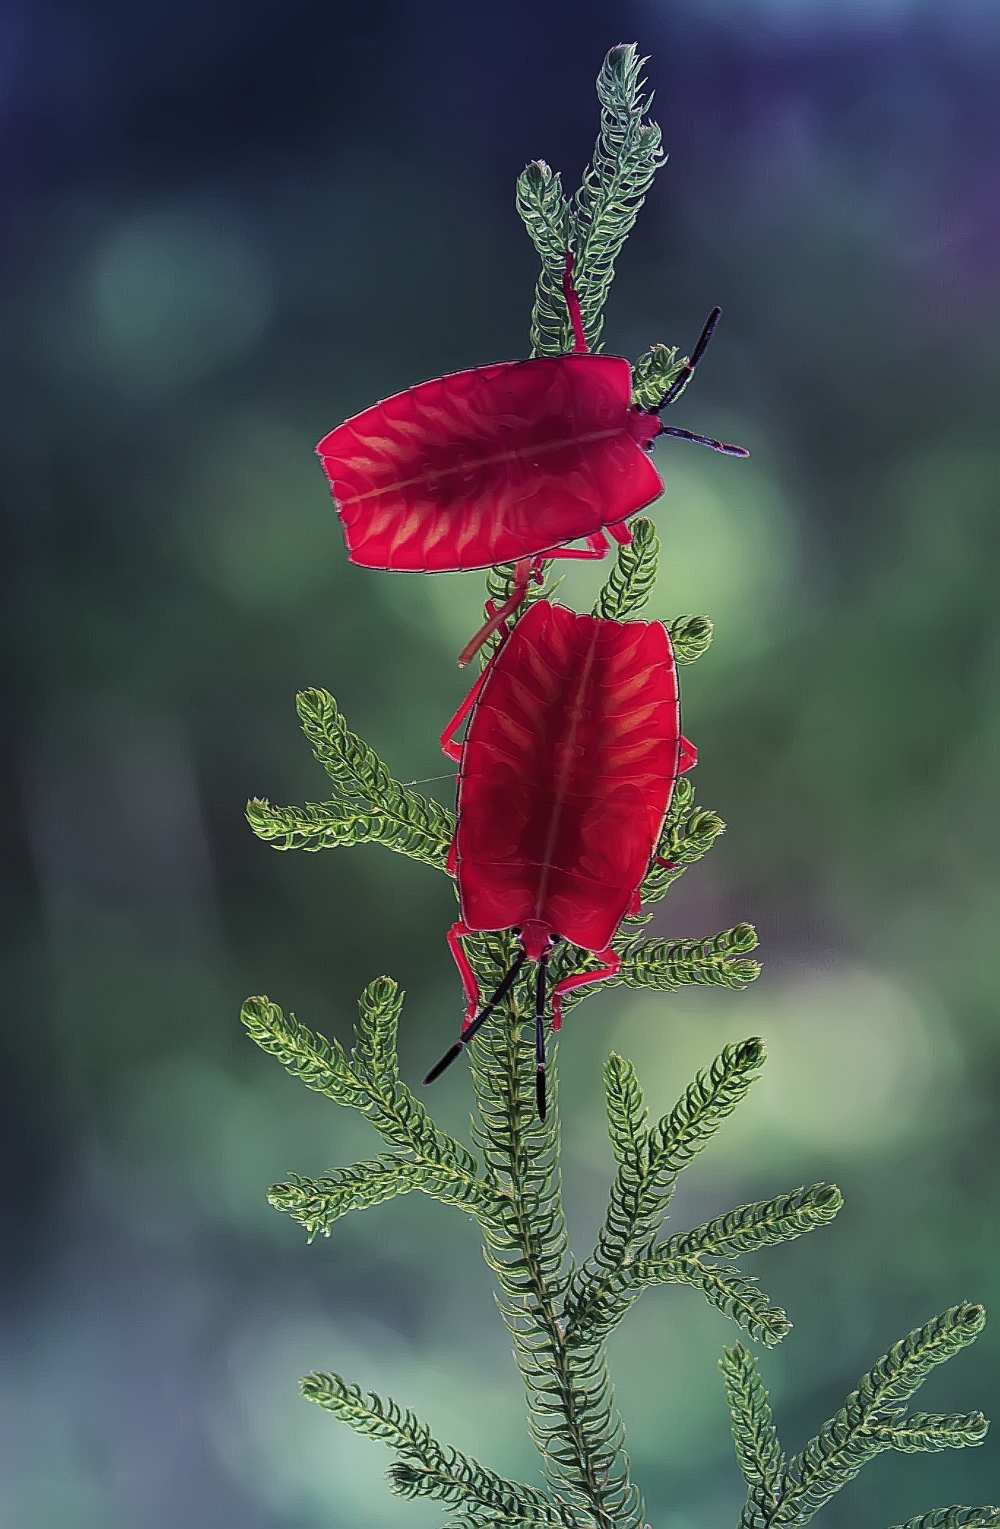 Red Ladybug von Abdul Gapur Dayak